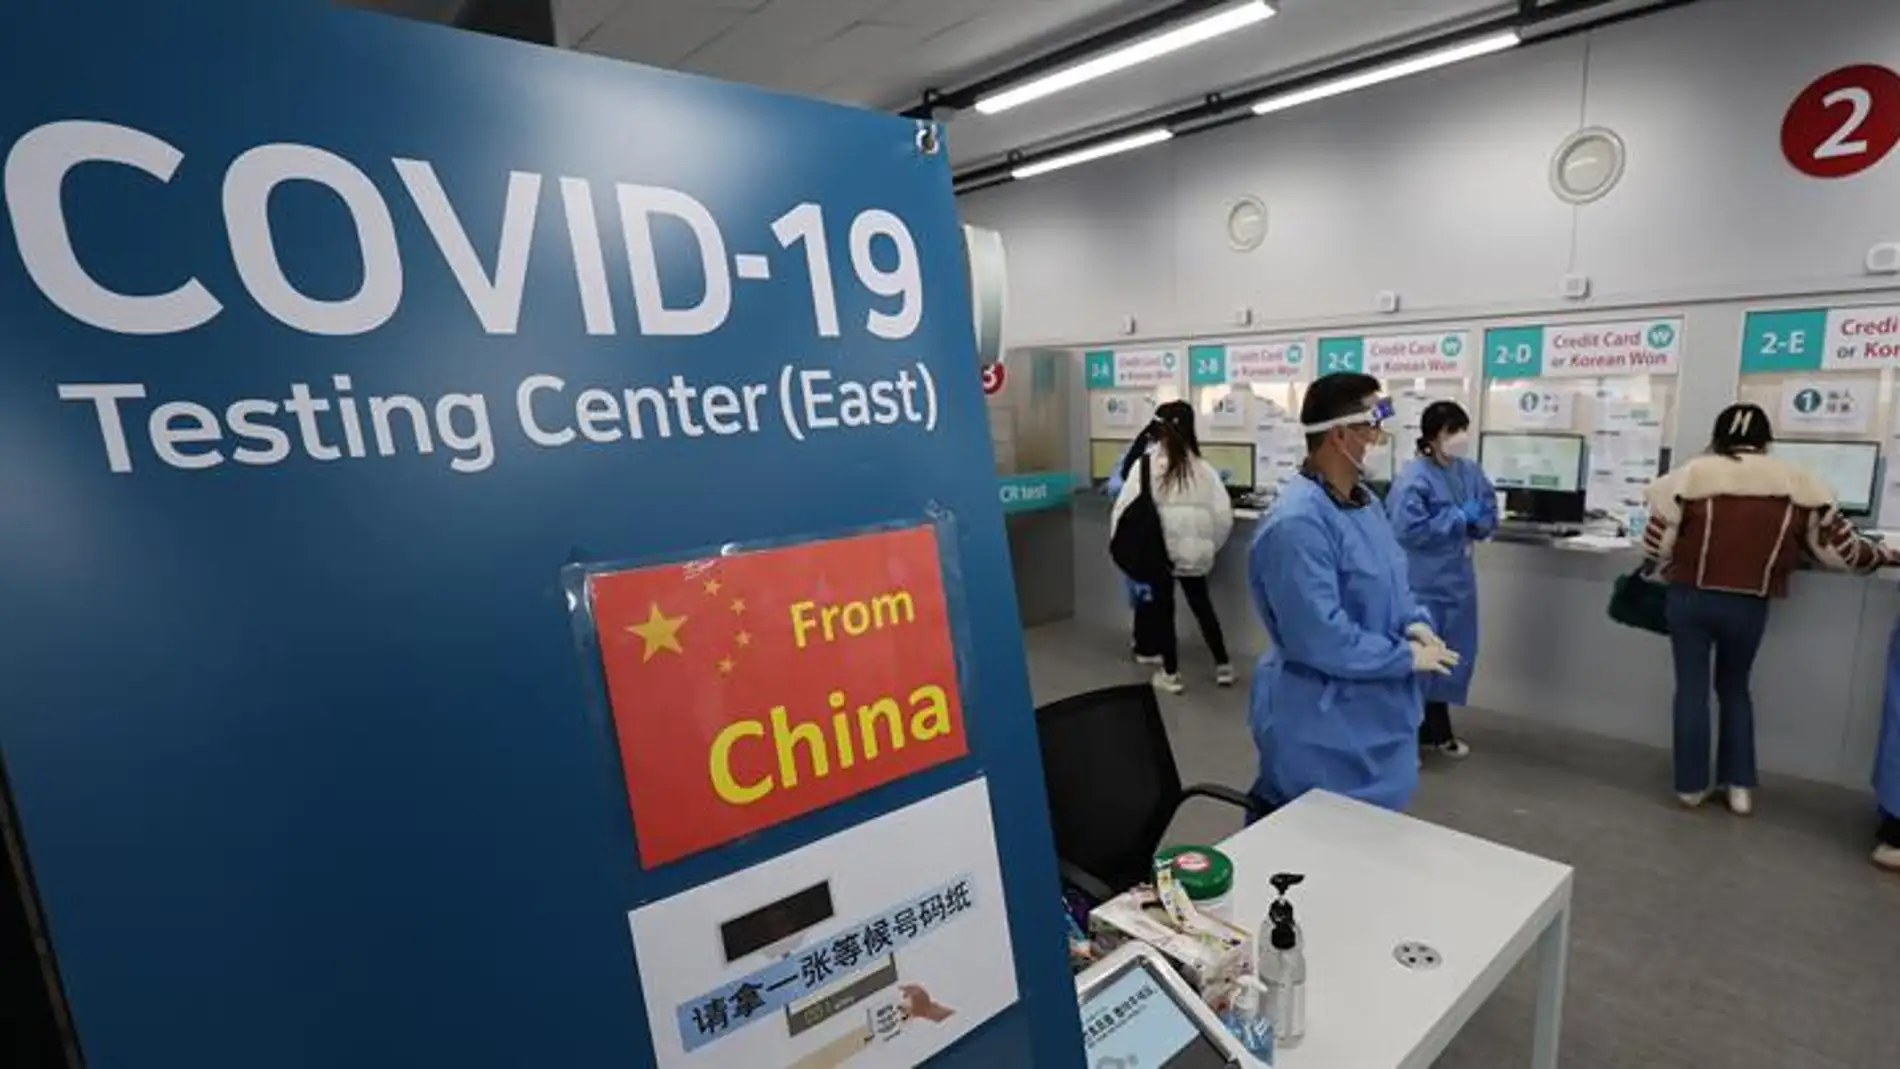 Los médicos de España piden una "doble condición" para los viajeros procedentes de China tras la ola de Covid